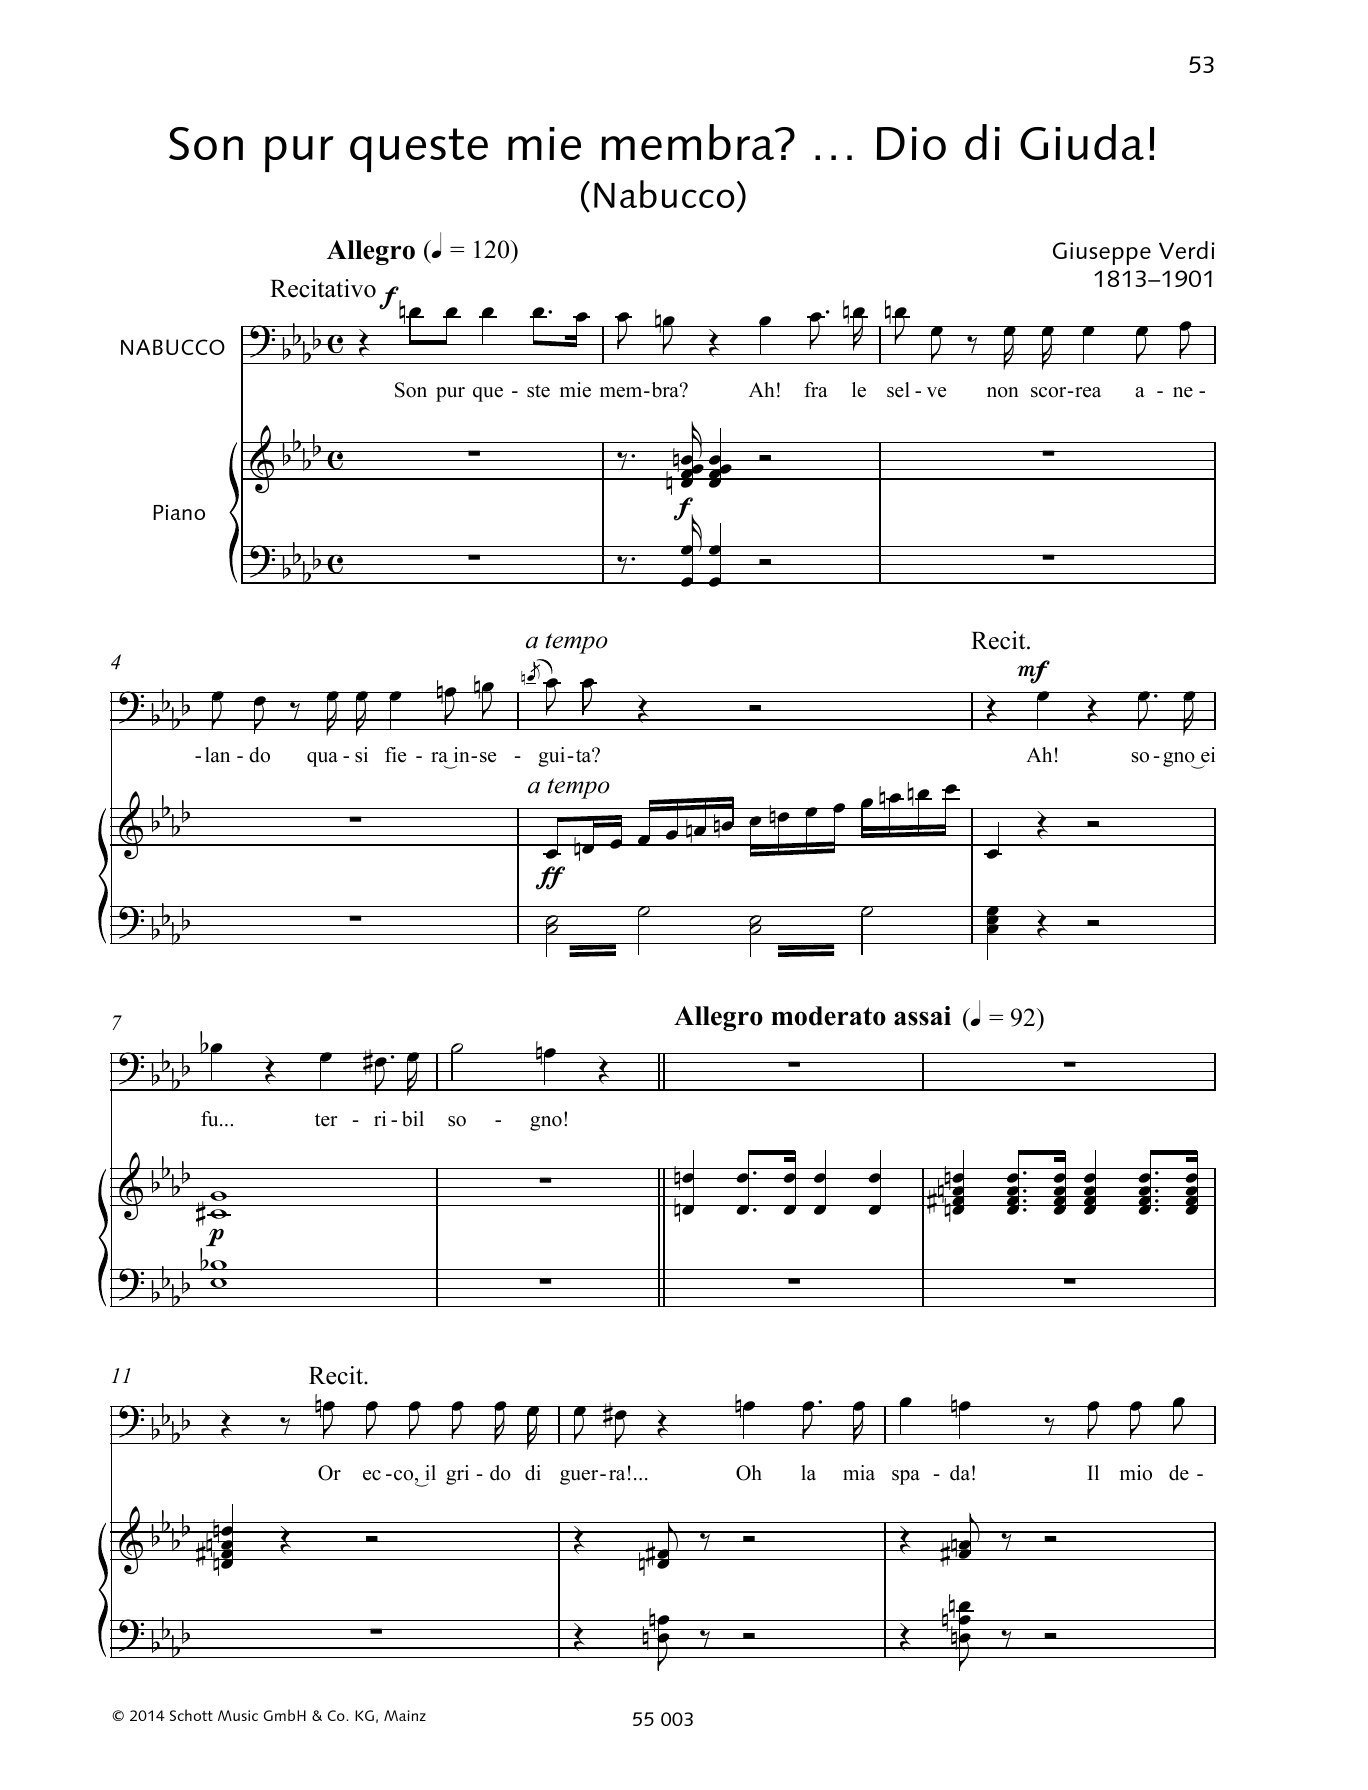 Download Francesca Licciarda Son pur queste mie membra?... Dio di Giuda! Sheet Music and learn how to play Piano & Vocal PDF digital score in minutes